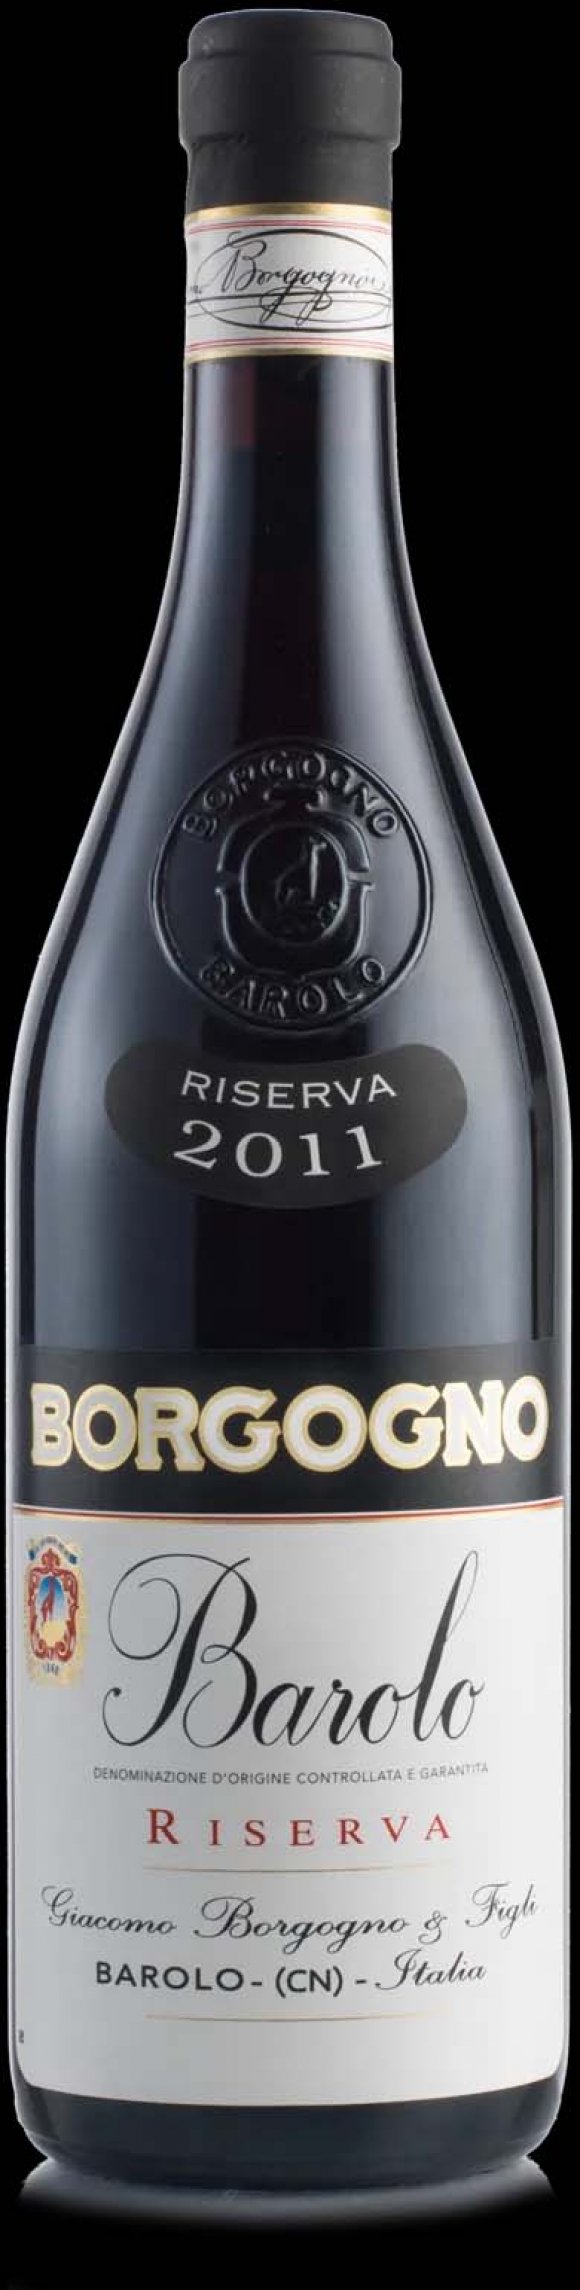 WINE DINE & SHINE - Wine Tasting with Biserno Borgogno ( Piemonte )